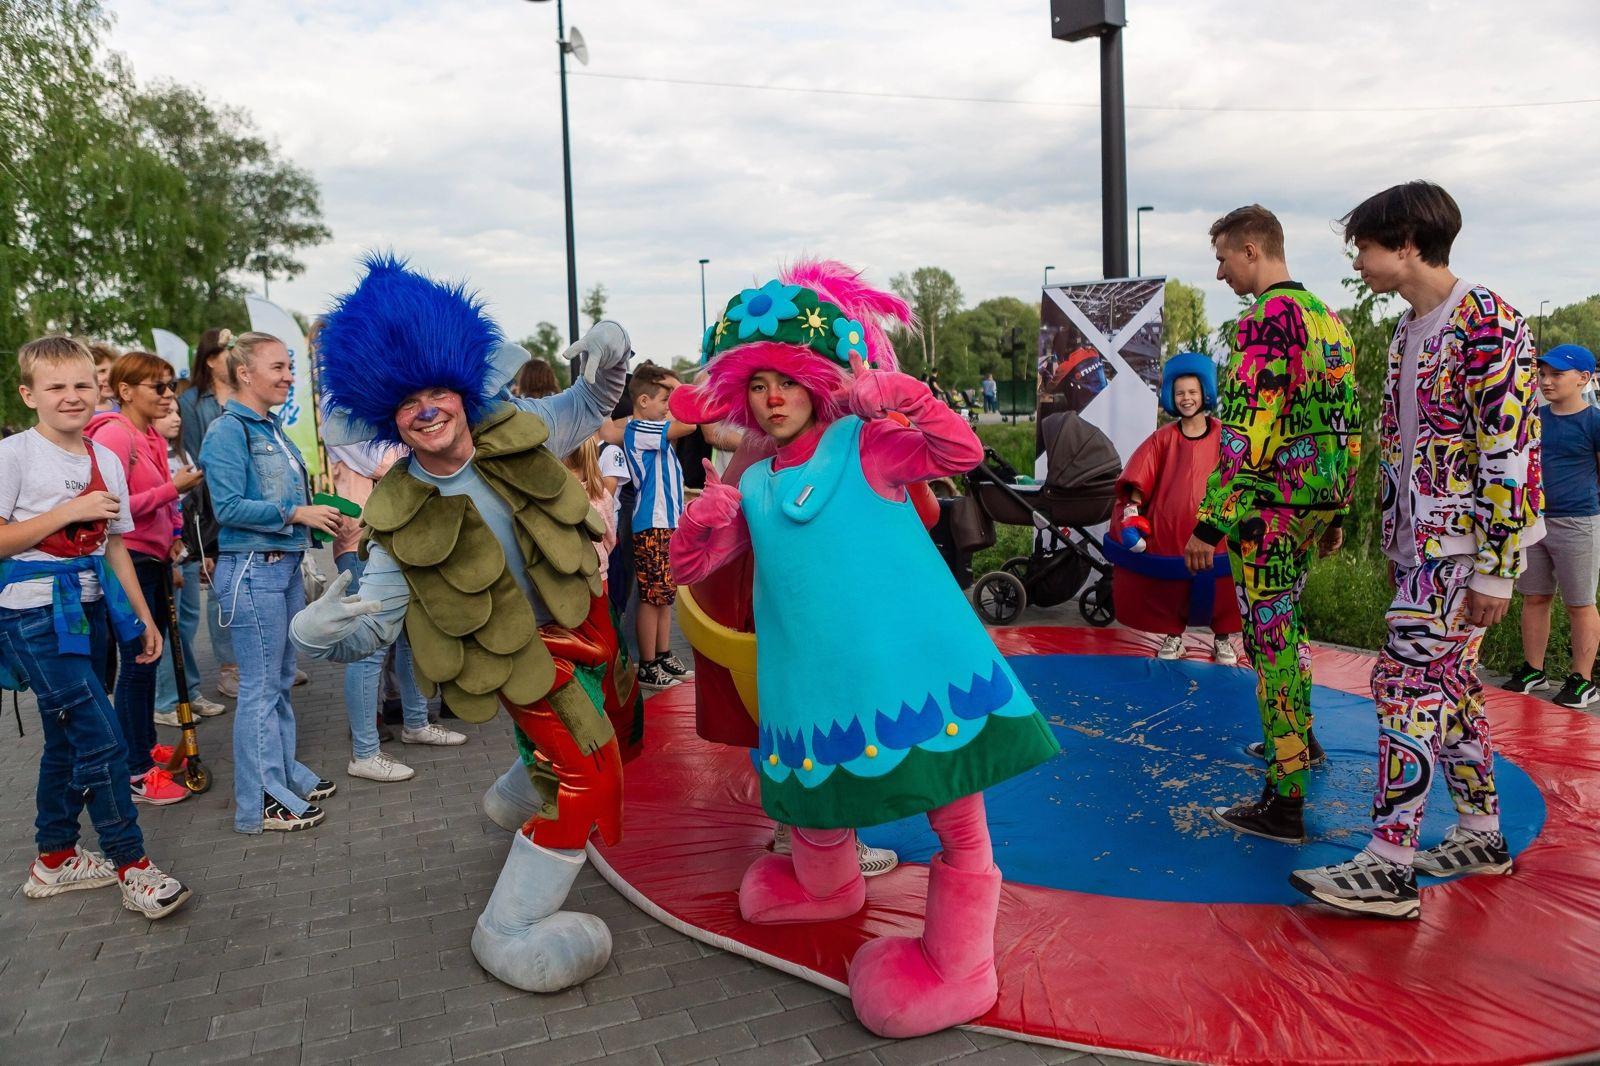 Фото 25 июня Новосибирск отпраздновал 130-летний юбилей : динамичные фото с праздника 2